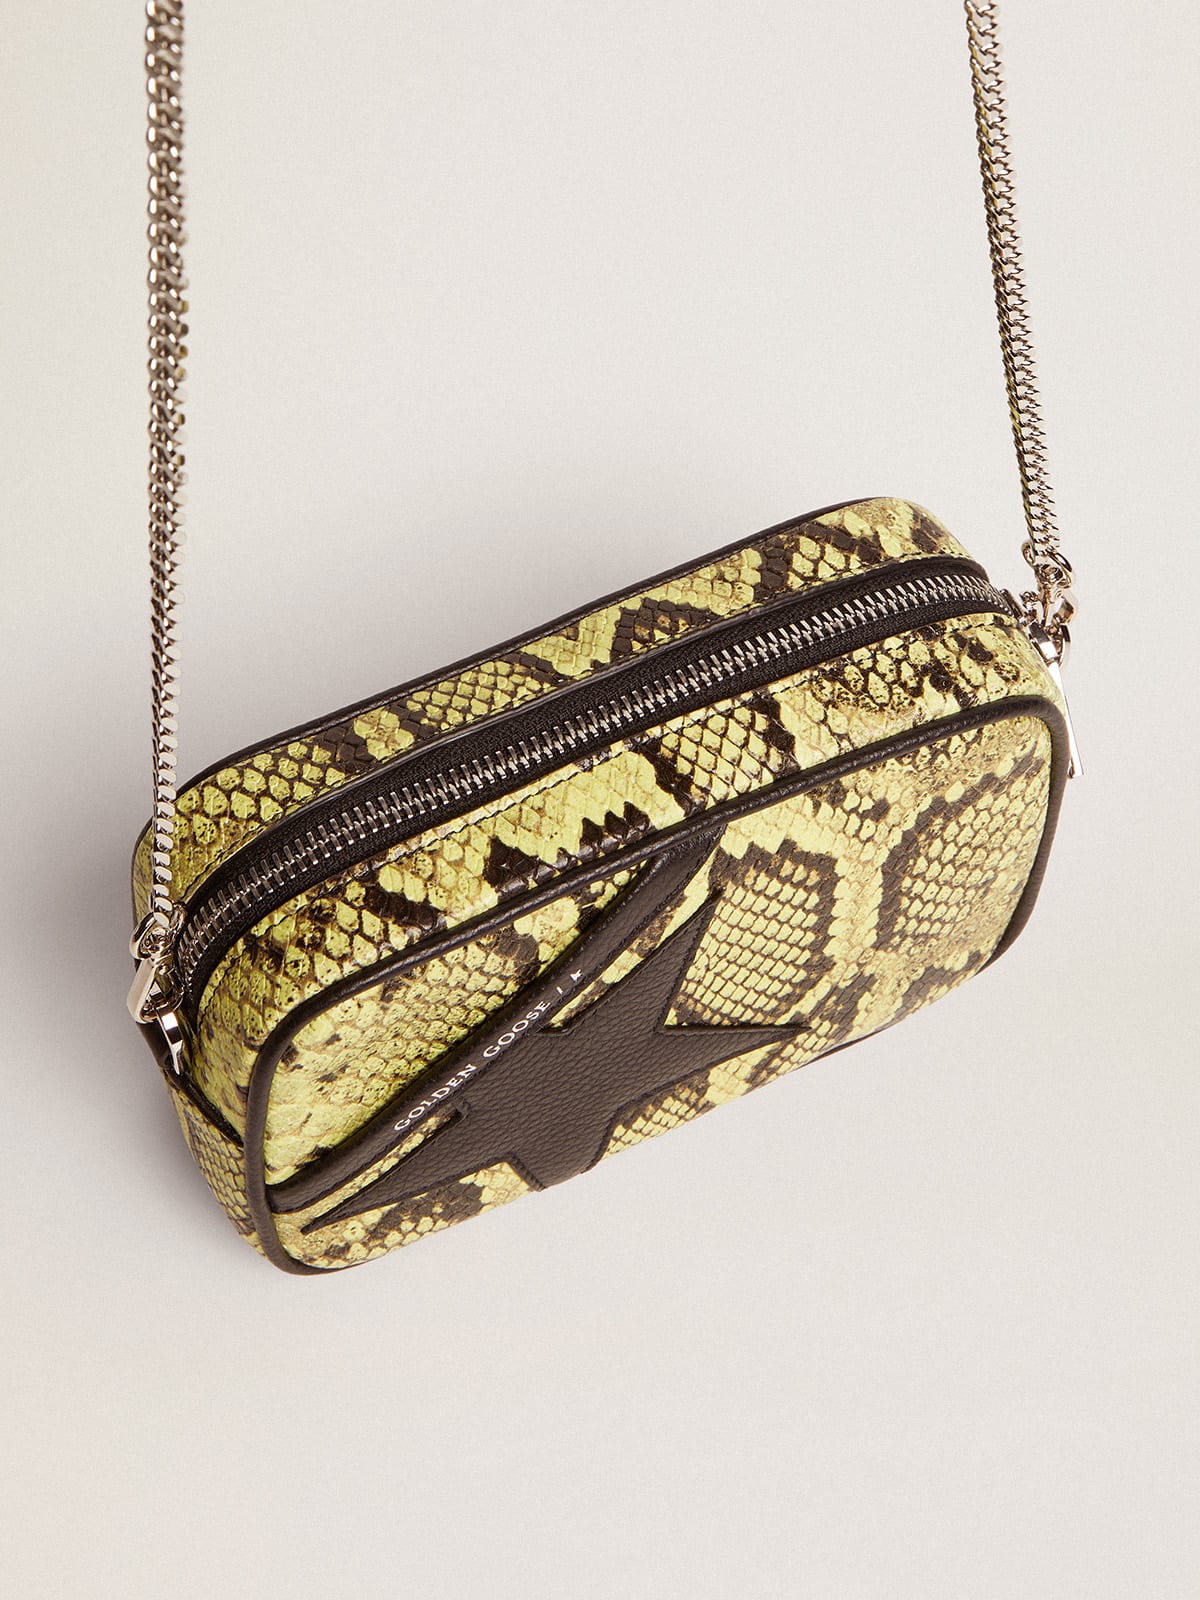 Golden Goose - Sac Mini Star Bag en cuir à imprimé python jaune lime avec étoile en cuir noir in 